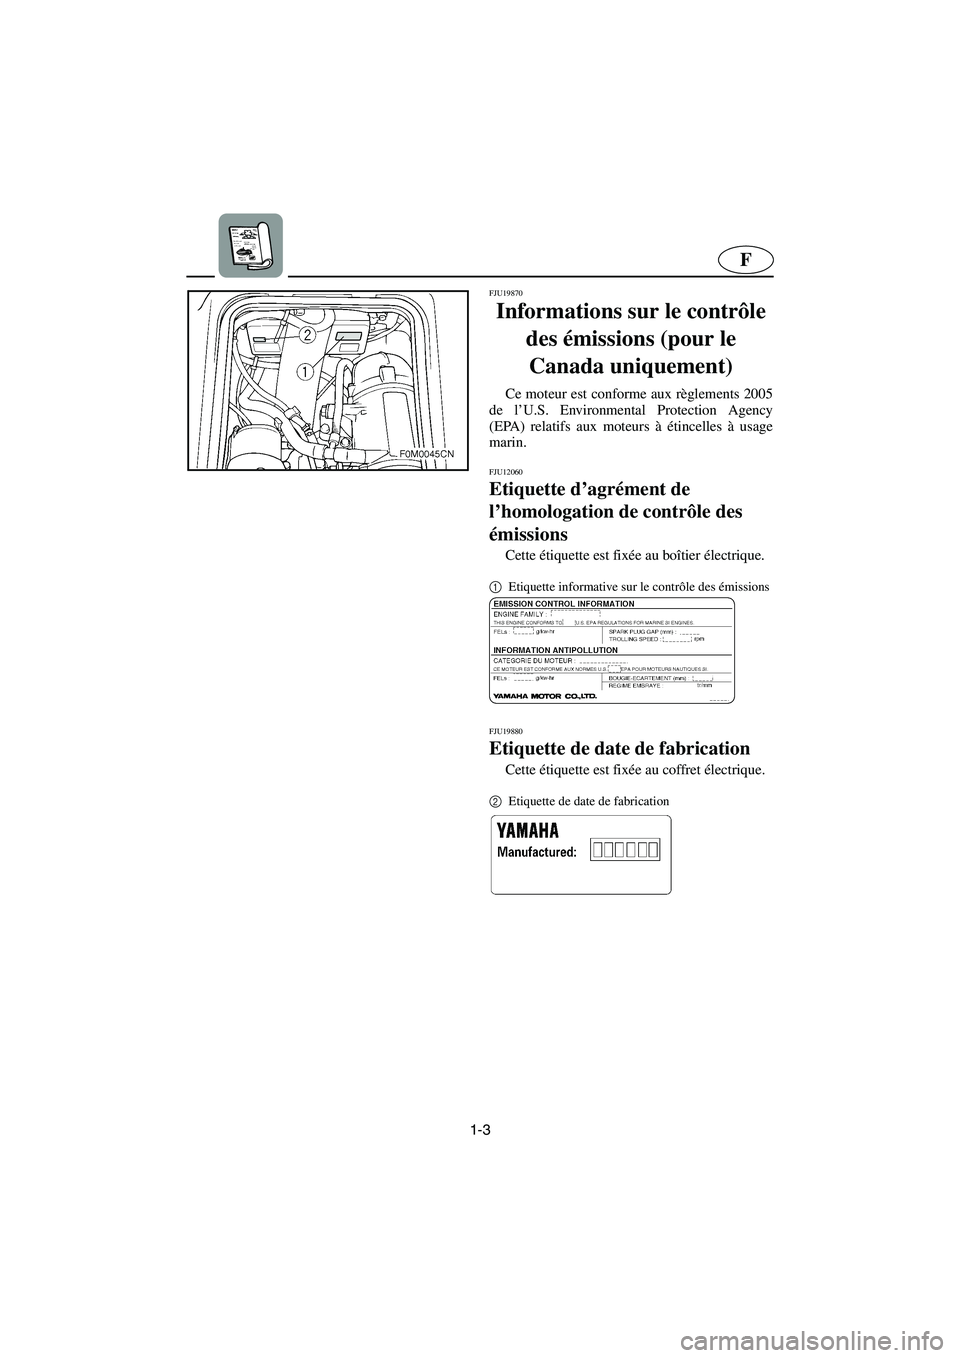 YAMAHA XL 700 2005  Manuale de Empleo (in Spanish) 1-3
F
FJU19870
Informations sur le contrôle 
des émissions (pour le 
Canada uniquement) 
Ce moteur est conforme aux règlements 2005
de l’U.S. Environmental Protection Agency
(EPA) relatifs aux mo